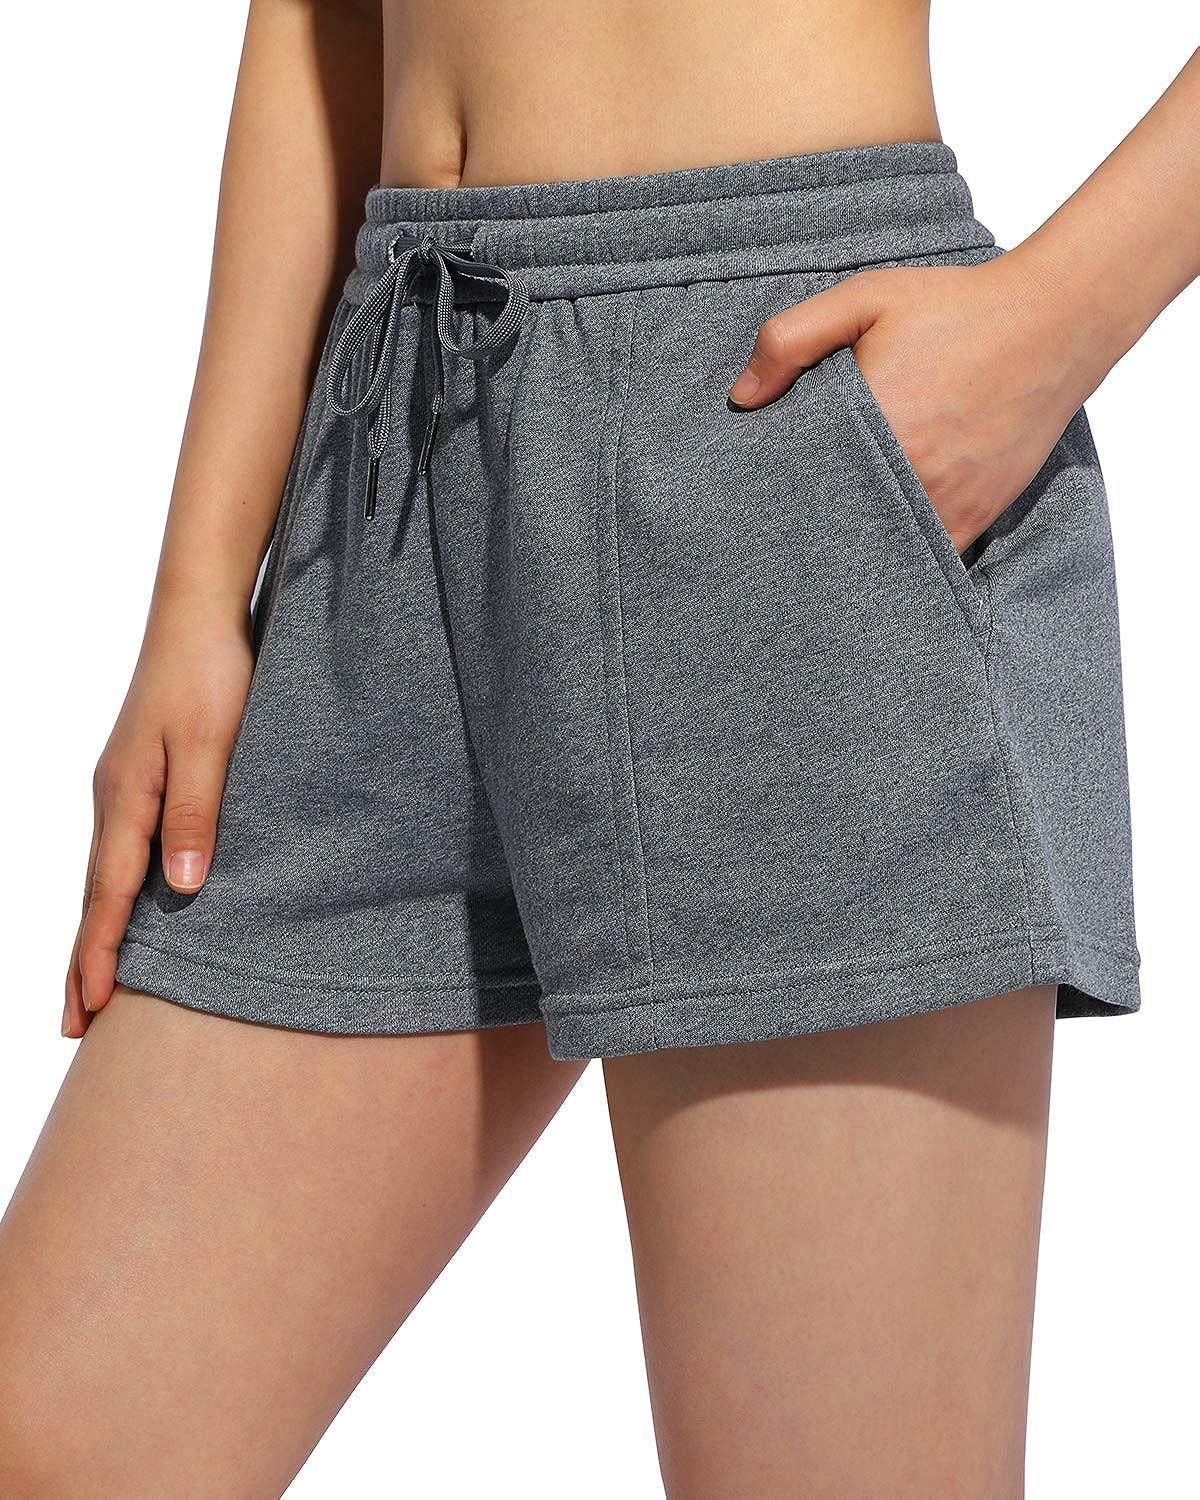 Promover Women's Athletic Shorts Cotton Lounge Shorts Elastic Waist Workout Running Sweat Shorts ... | Amazon (US)